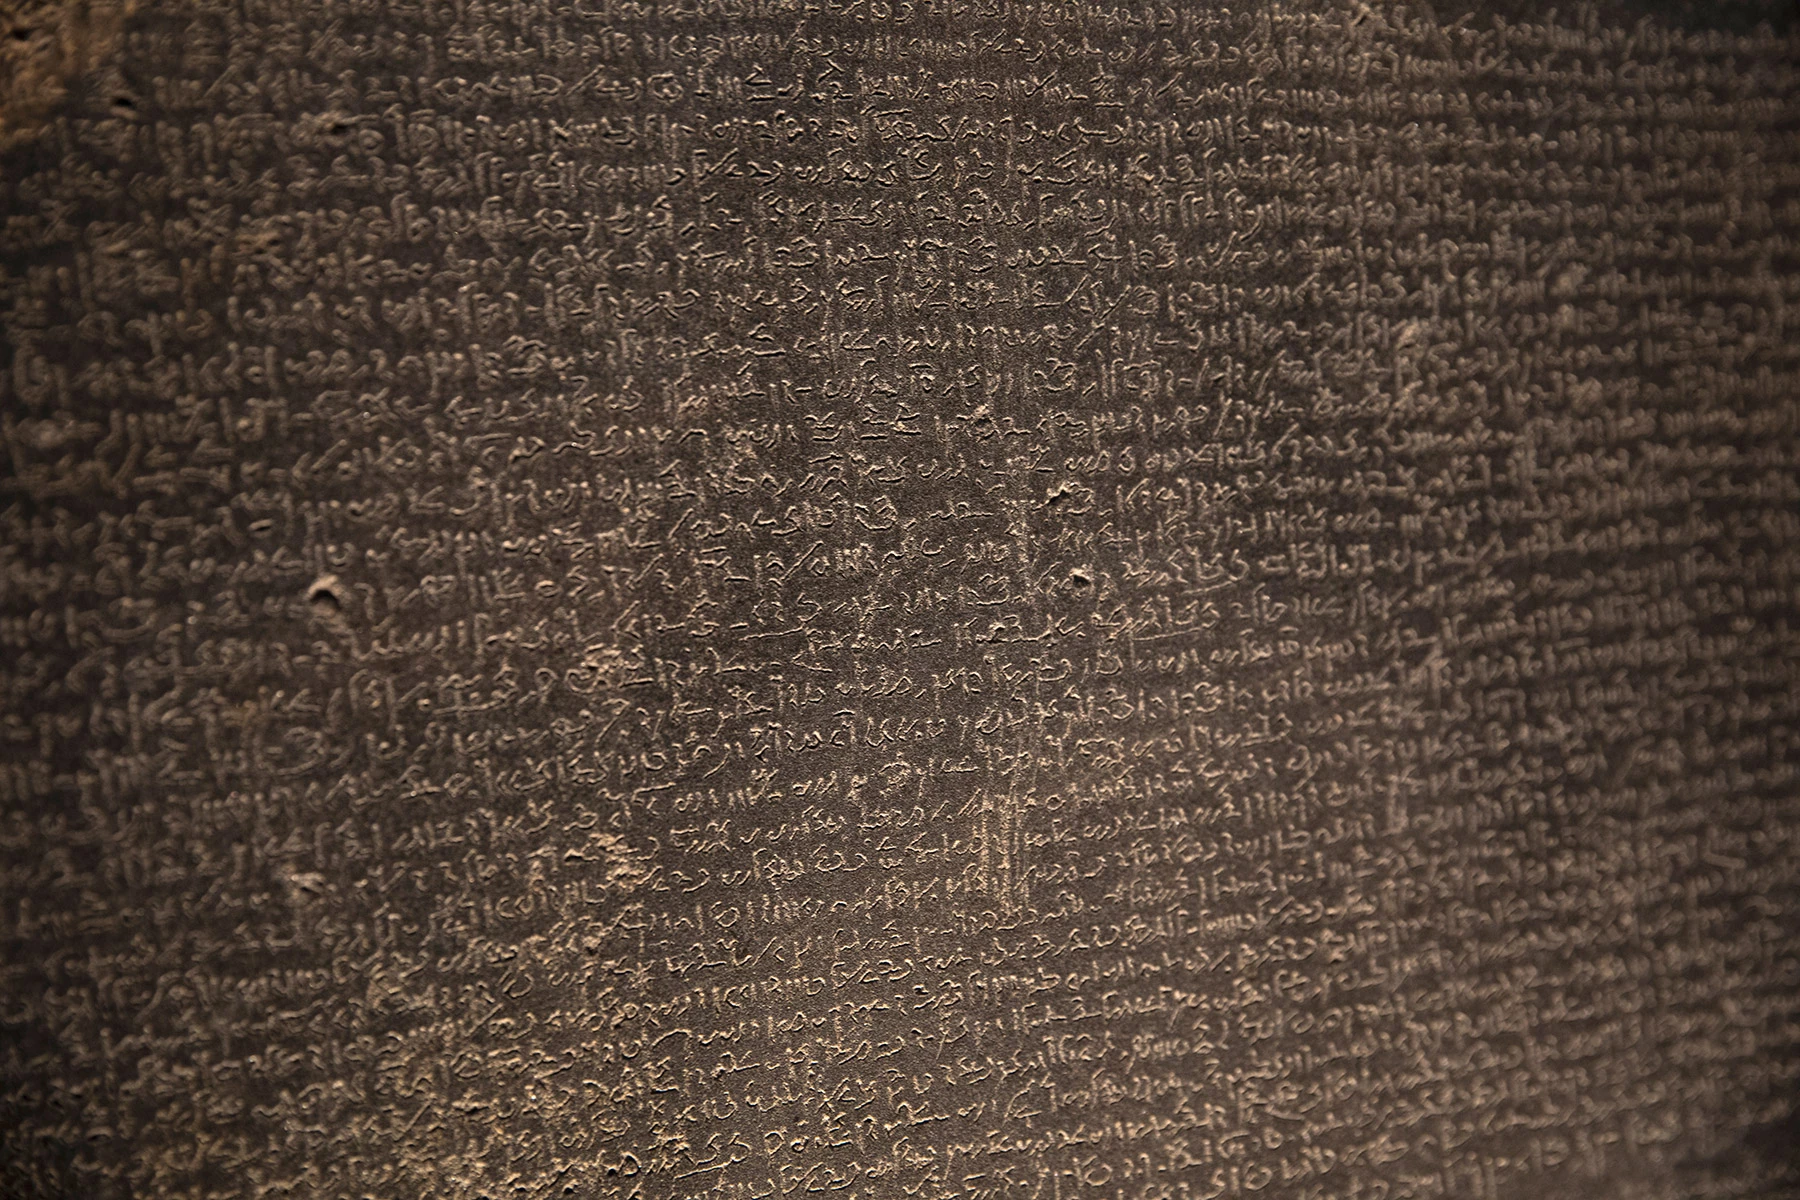 <p>Розеттский камень&nbsp;&mdash; фрагмент более крупной плиты, воздвигнутой в египетском храме в 196 году до н. э.</p>